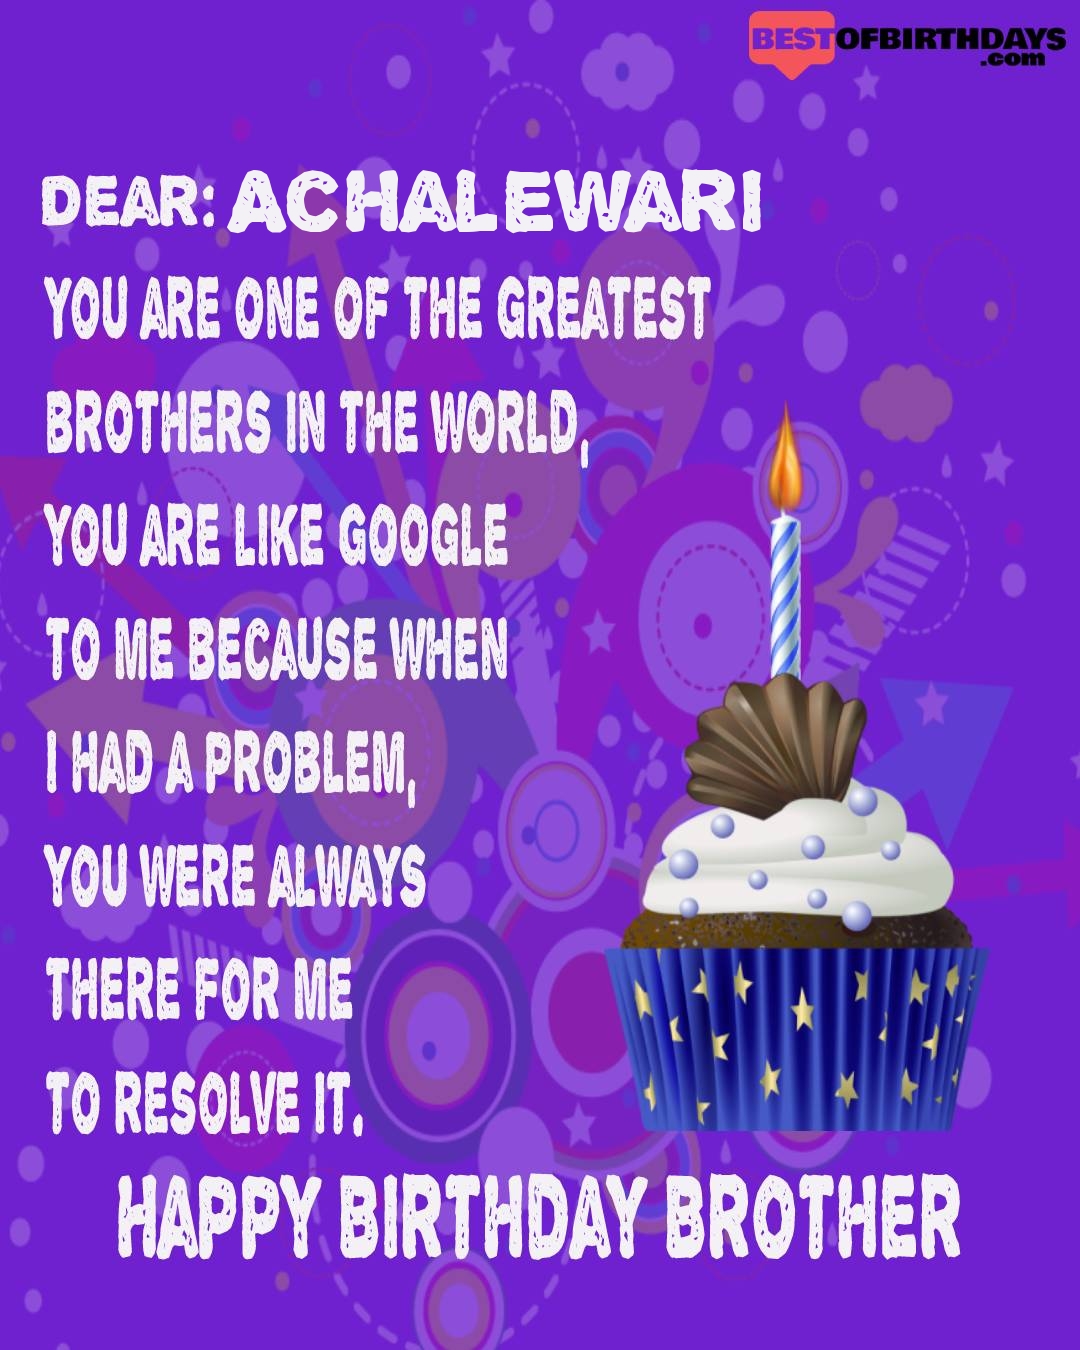 Happy birthday achalewari bhai brother bro